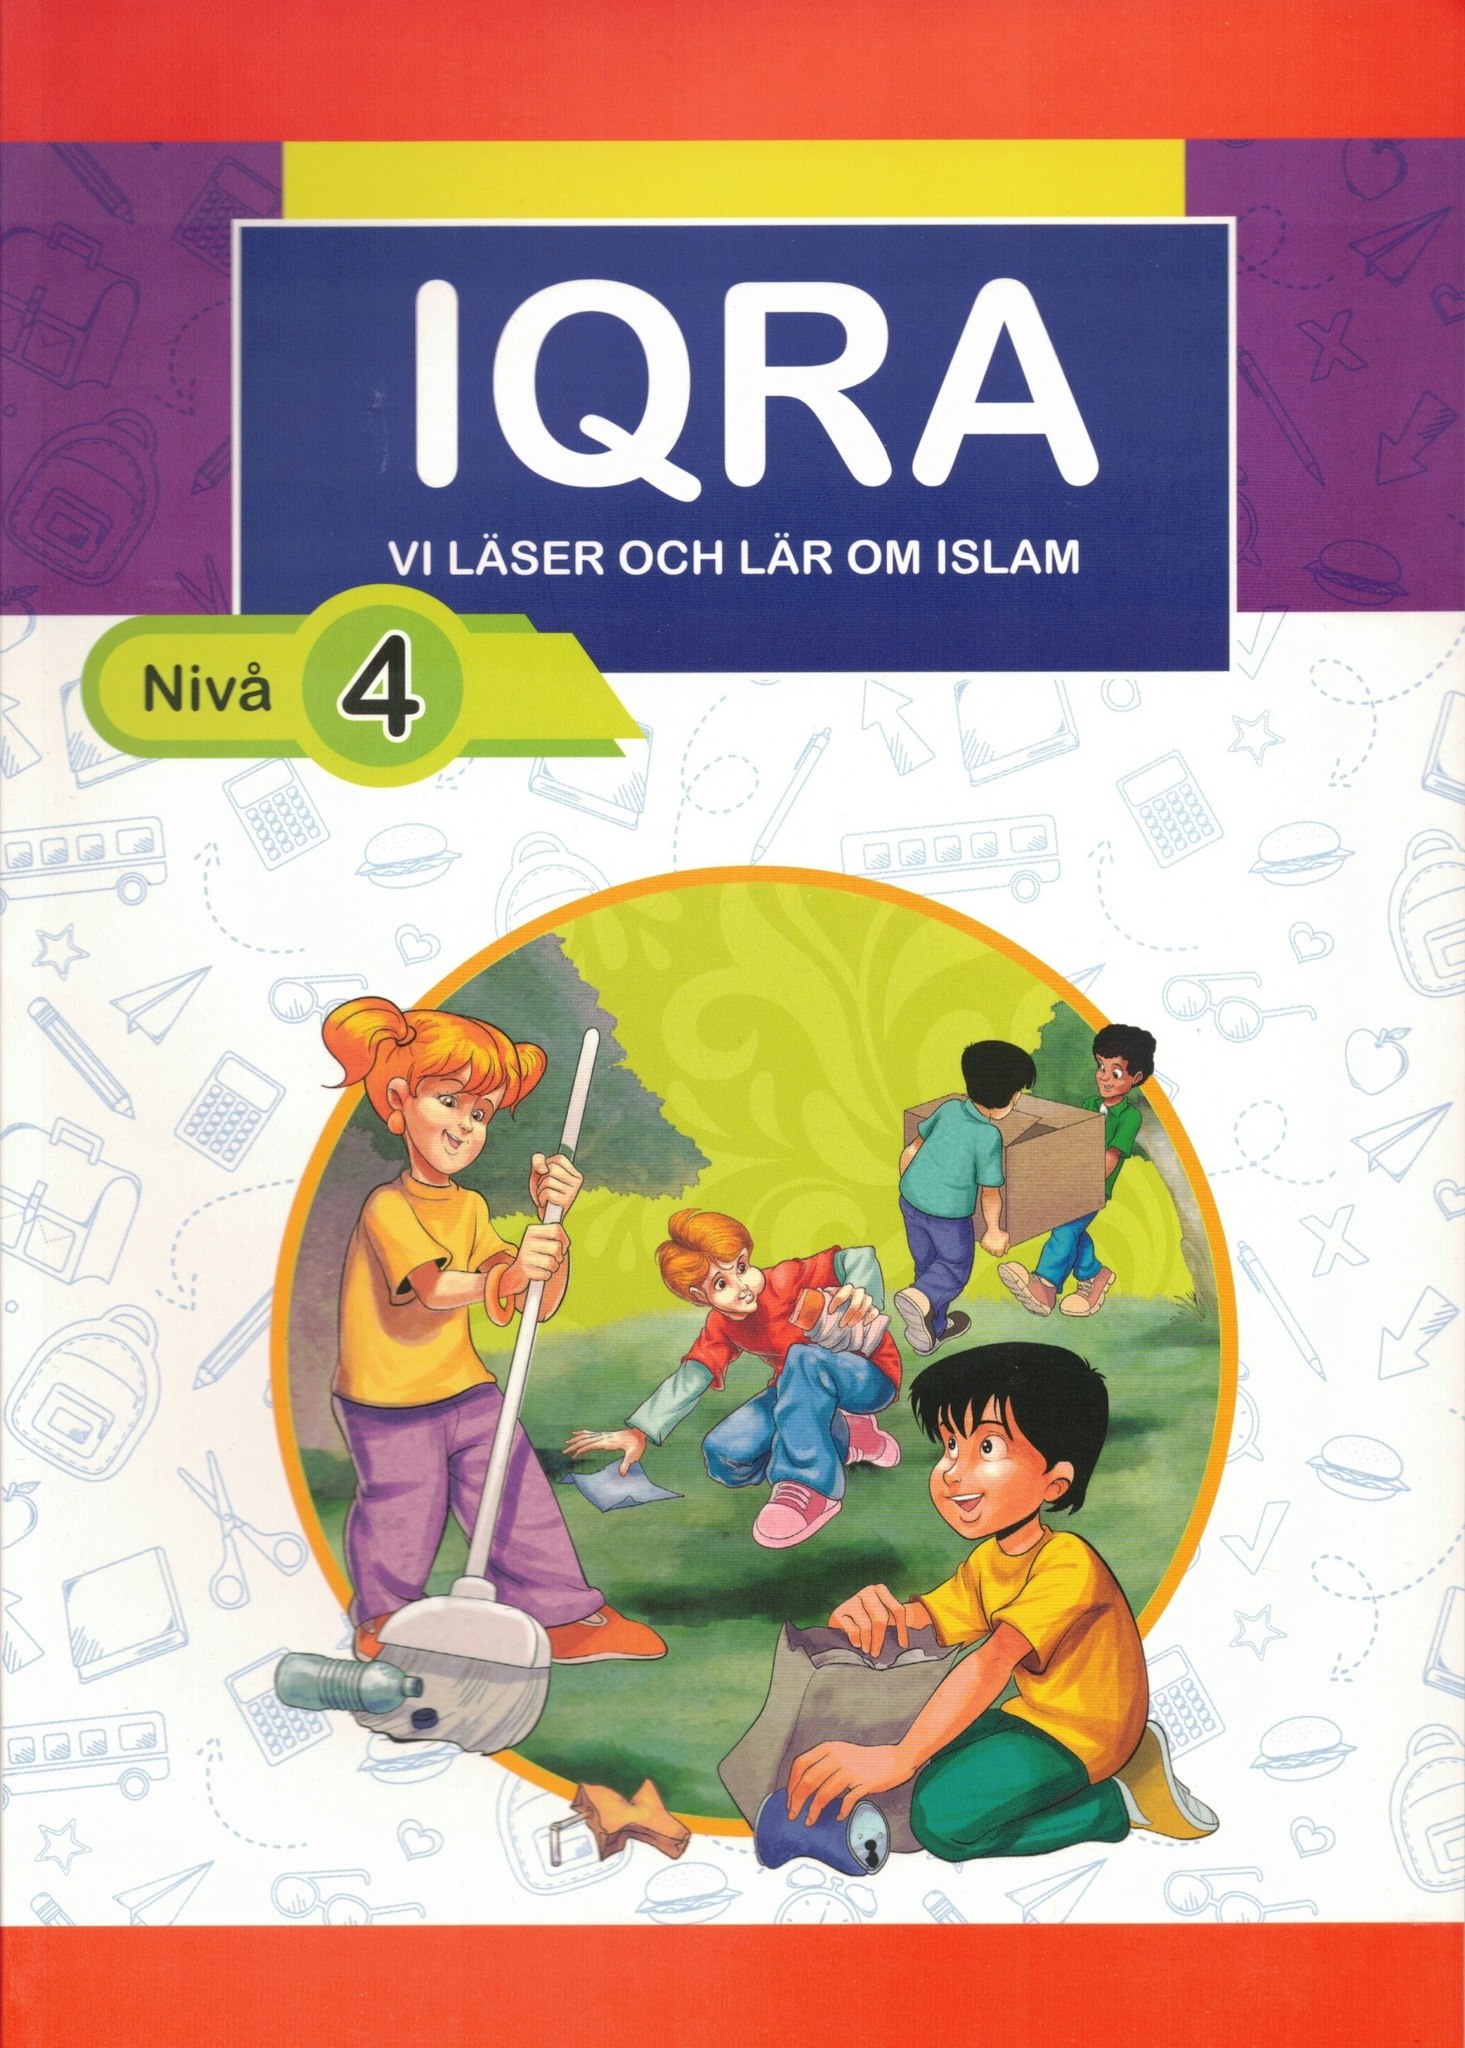 IQRA. Nivå 4. Vi läser och lär om islam